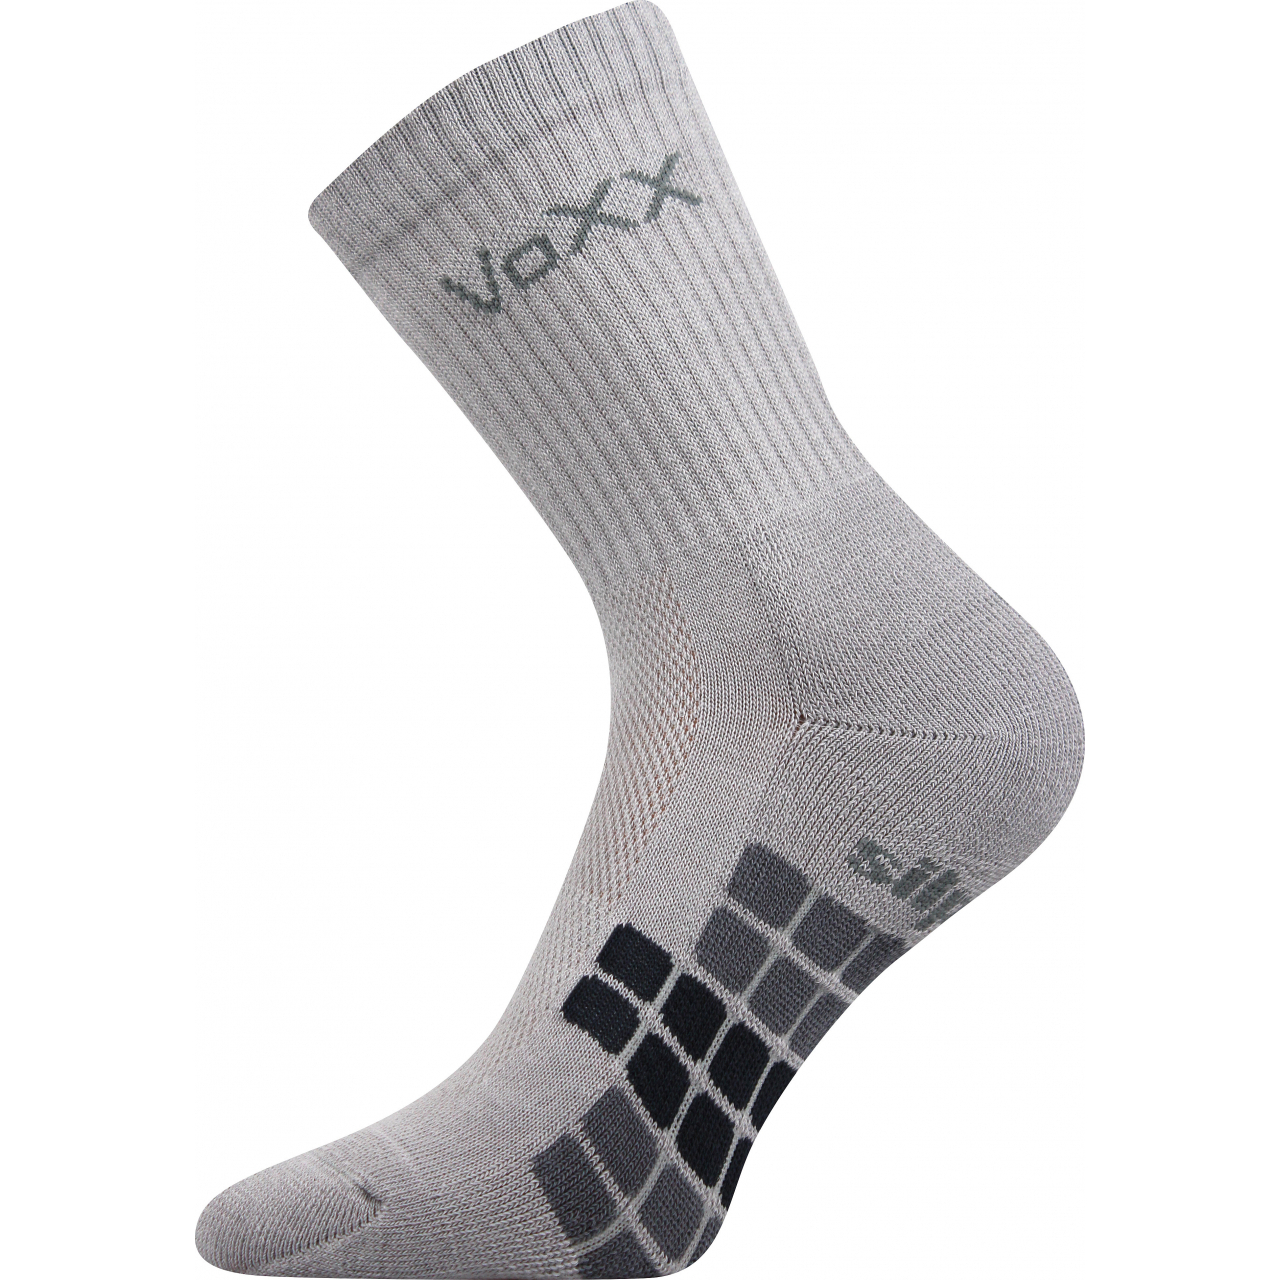 Ponožky unisex sportovní Voxx Raptor - světle šedé, 35-38